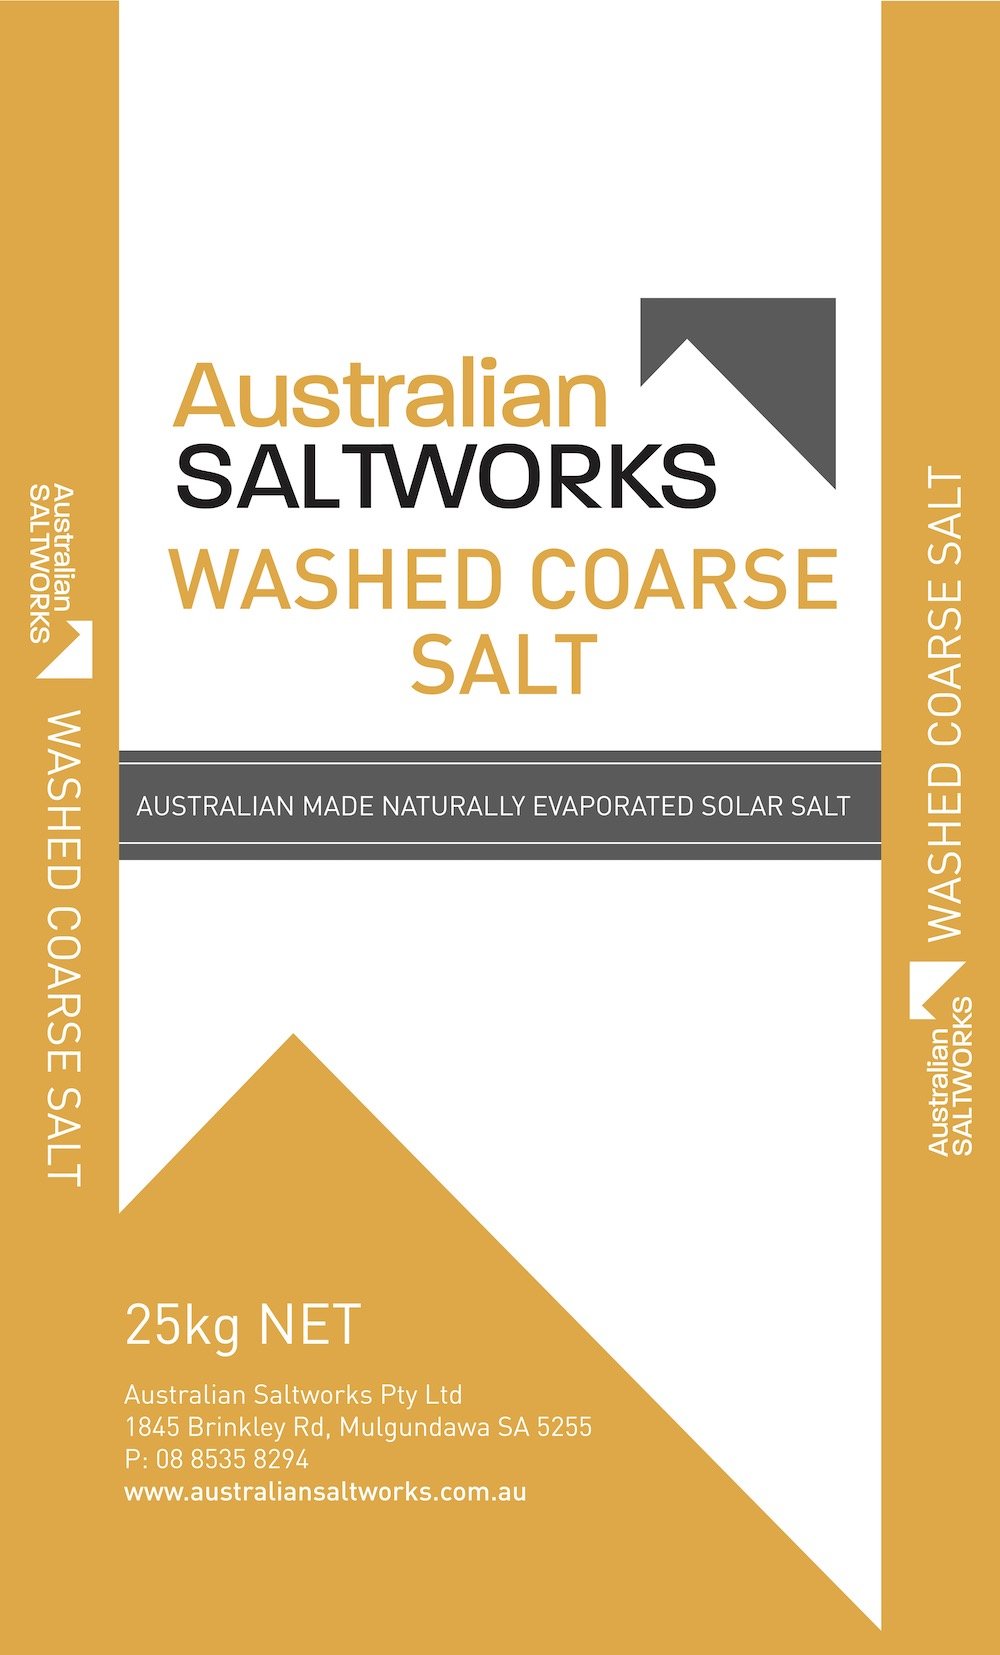 Saltworks Washed Coarse Salt.jpg